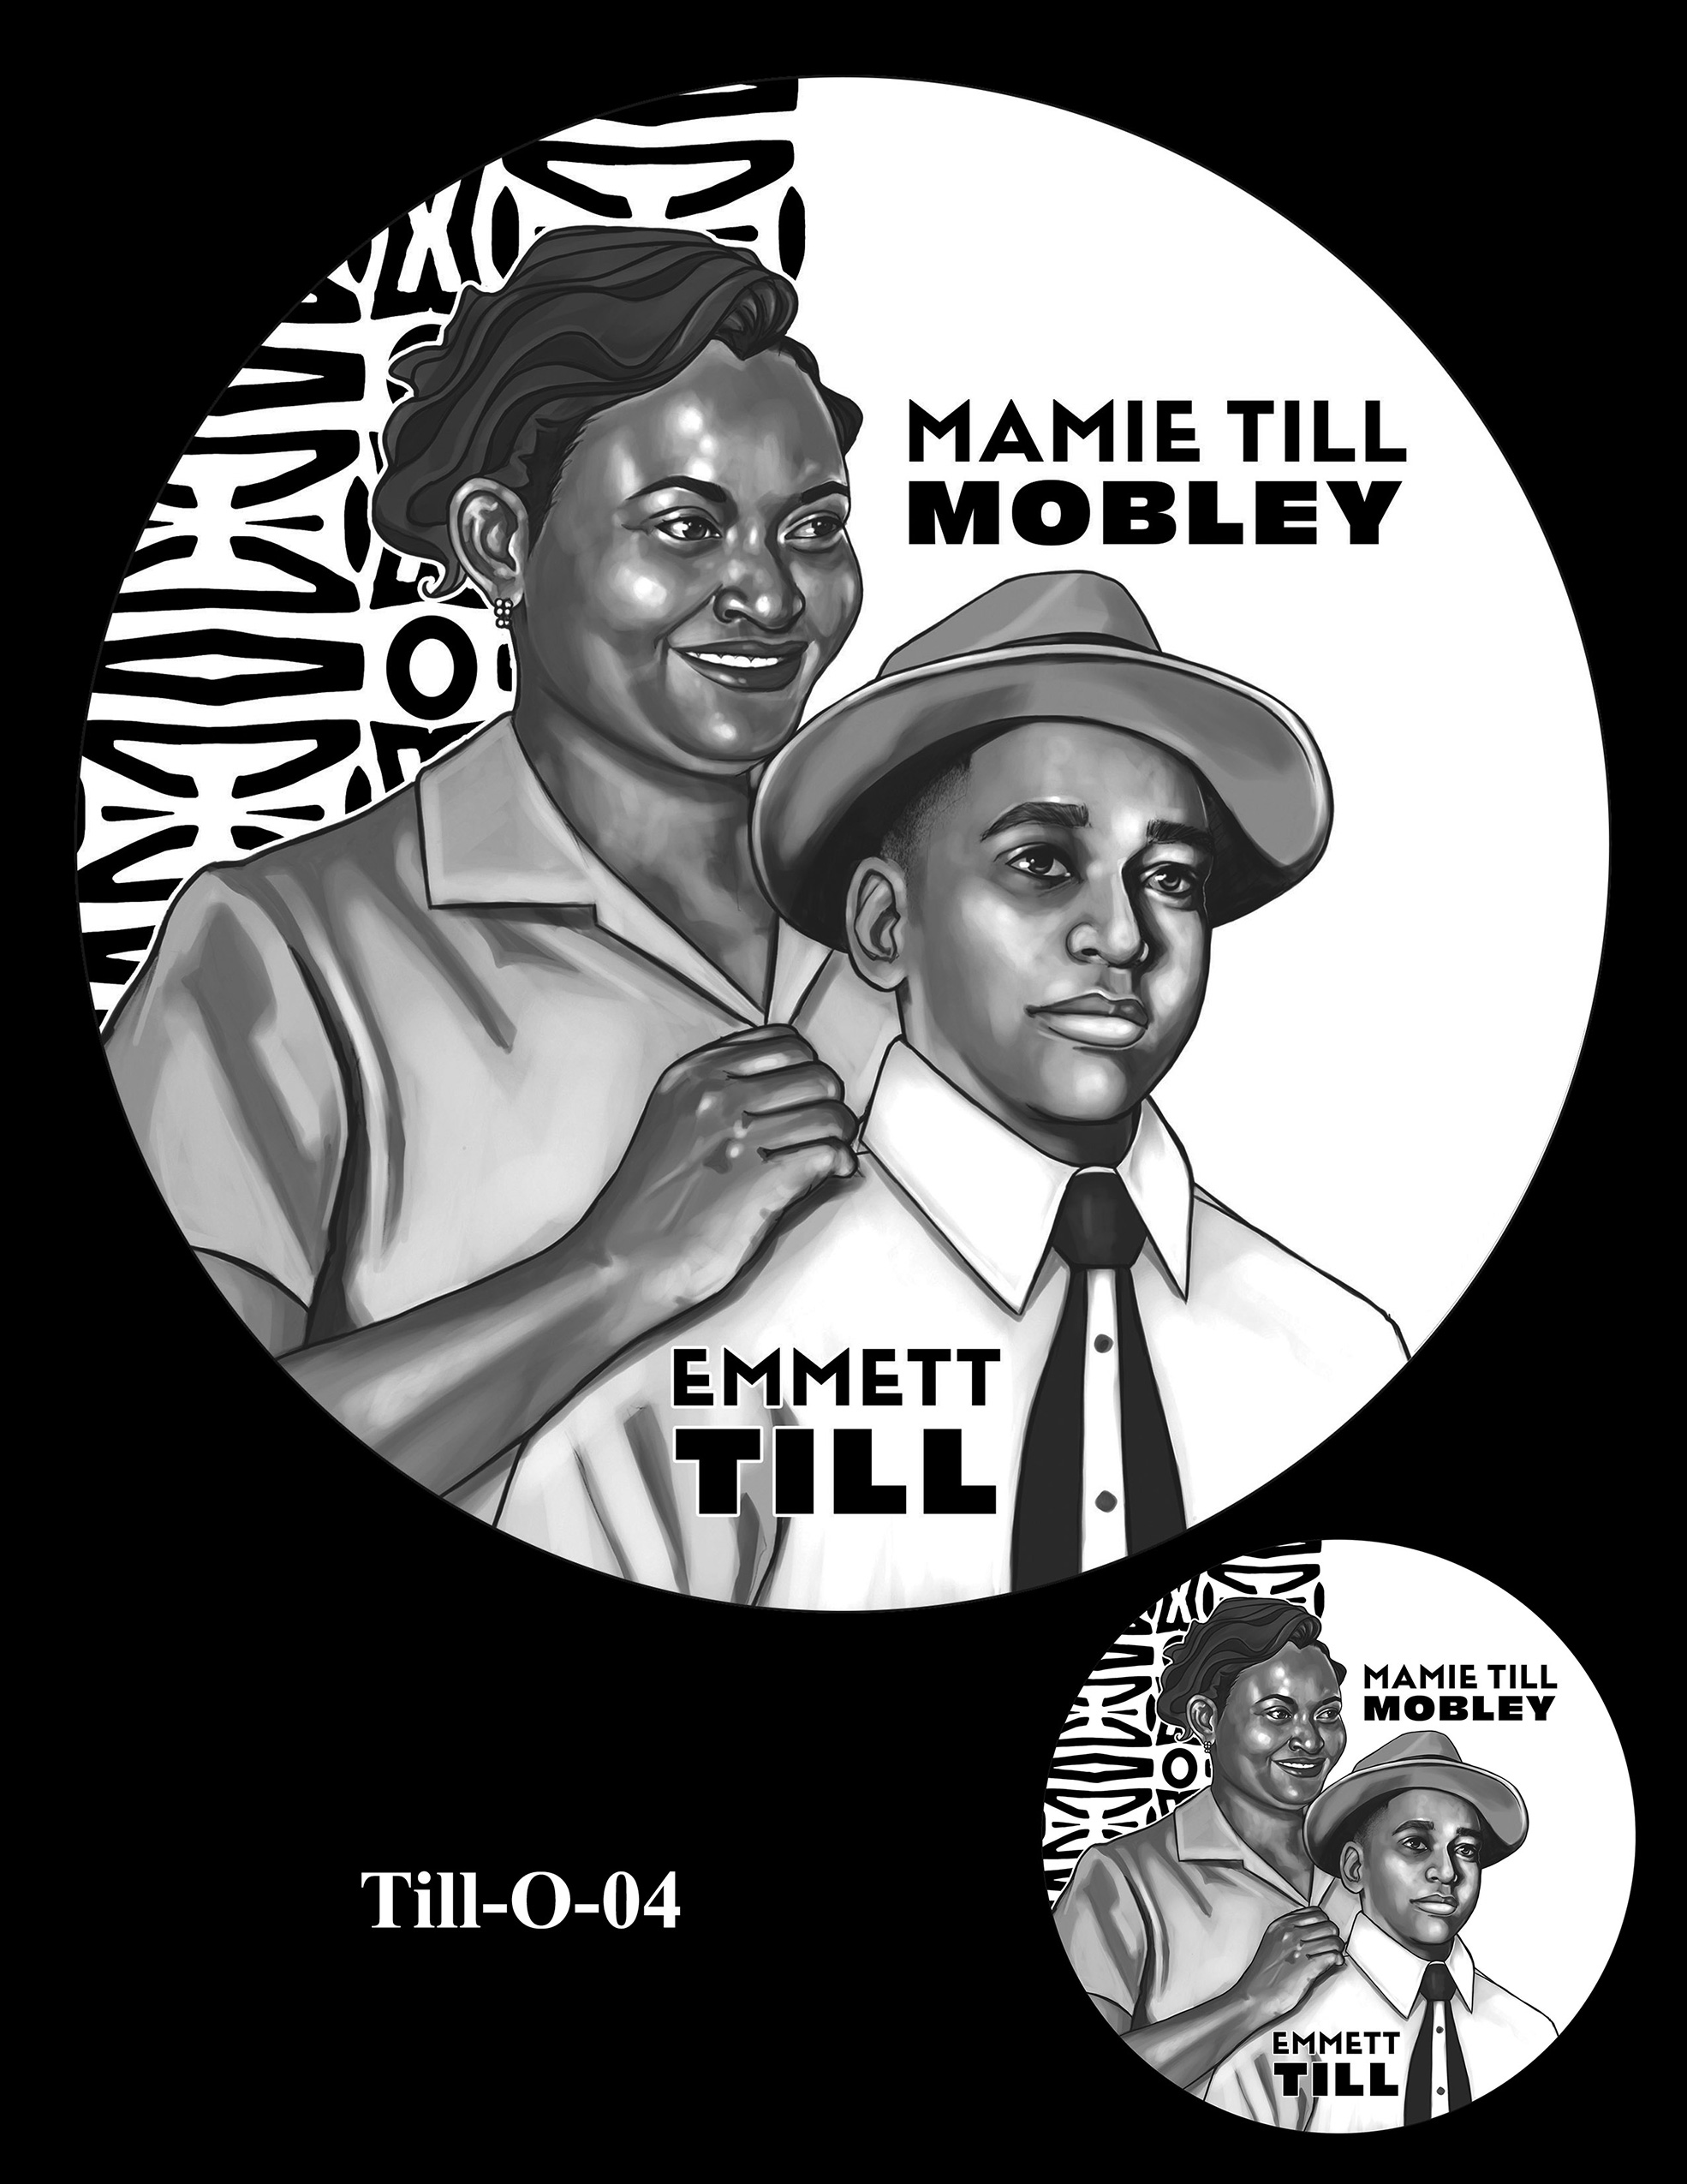 Till-O-04 -- Emmett Till and Mamie Till Mobley Congressional Gold Medal